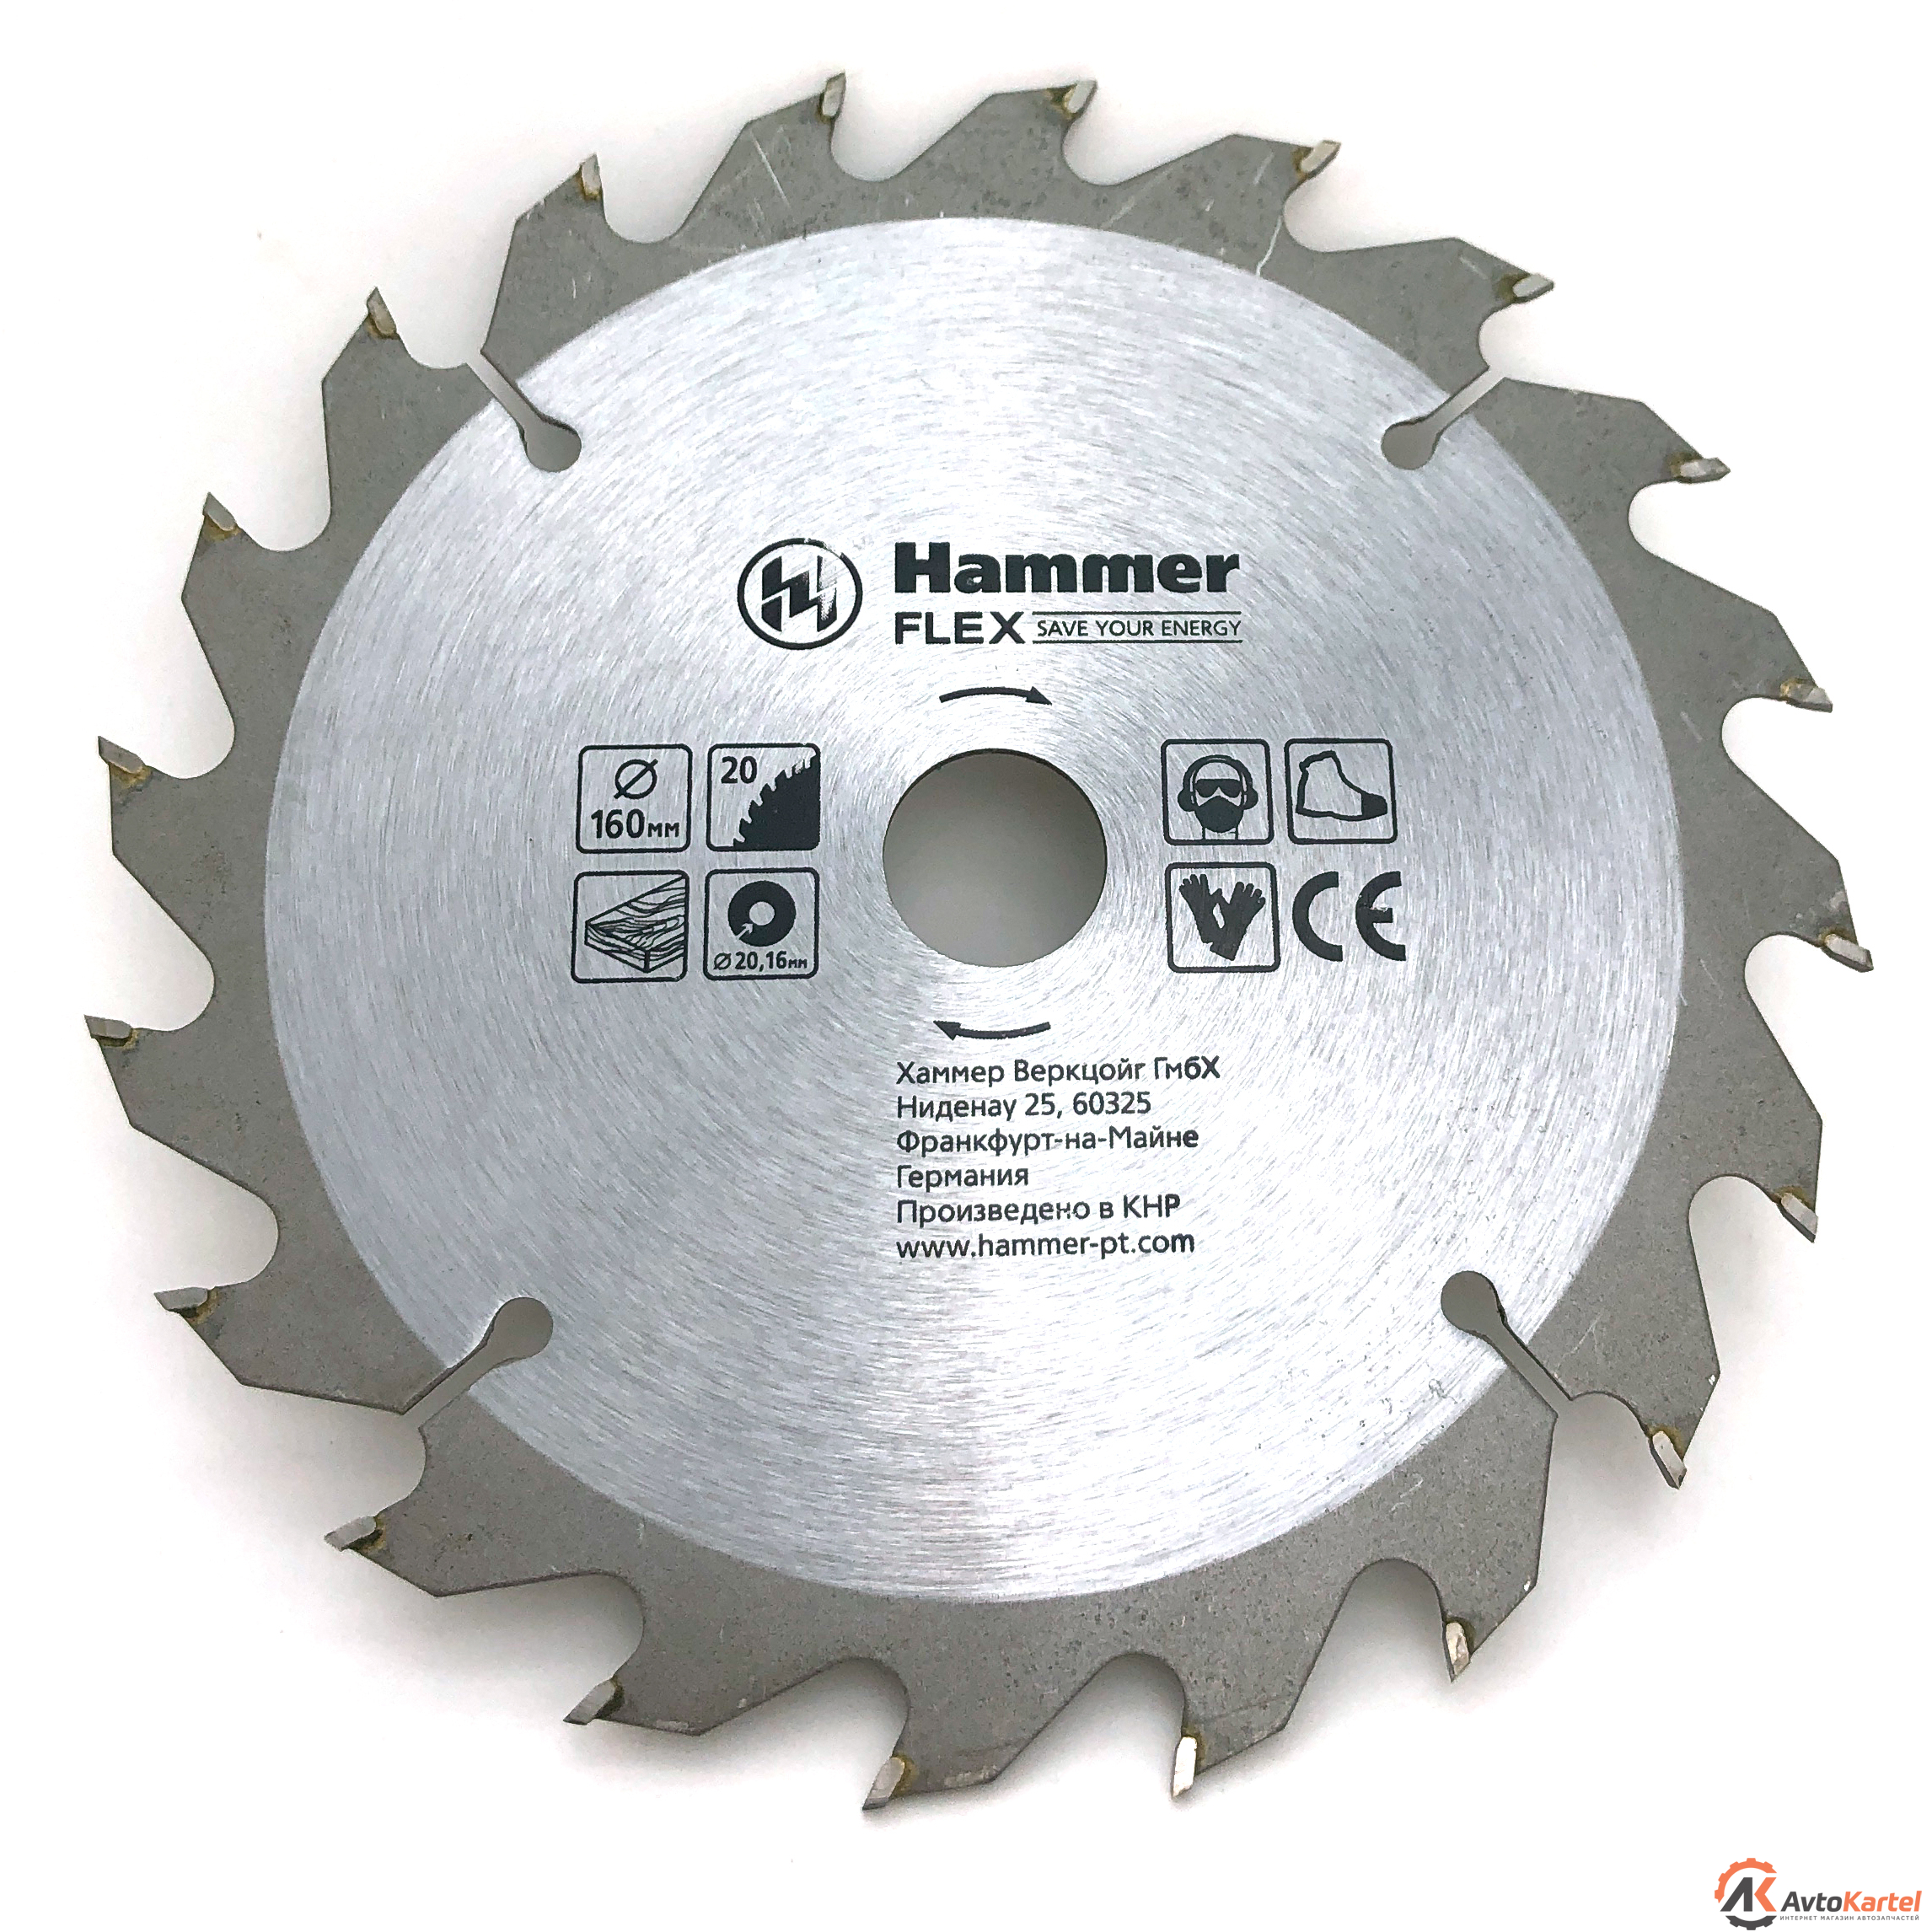 Диск пильный диск пильный Hammer Flex 205-103 CSB WD, 160 мм x 20 x 20-16 мм, по дереву